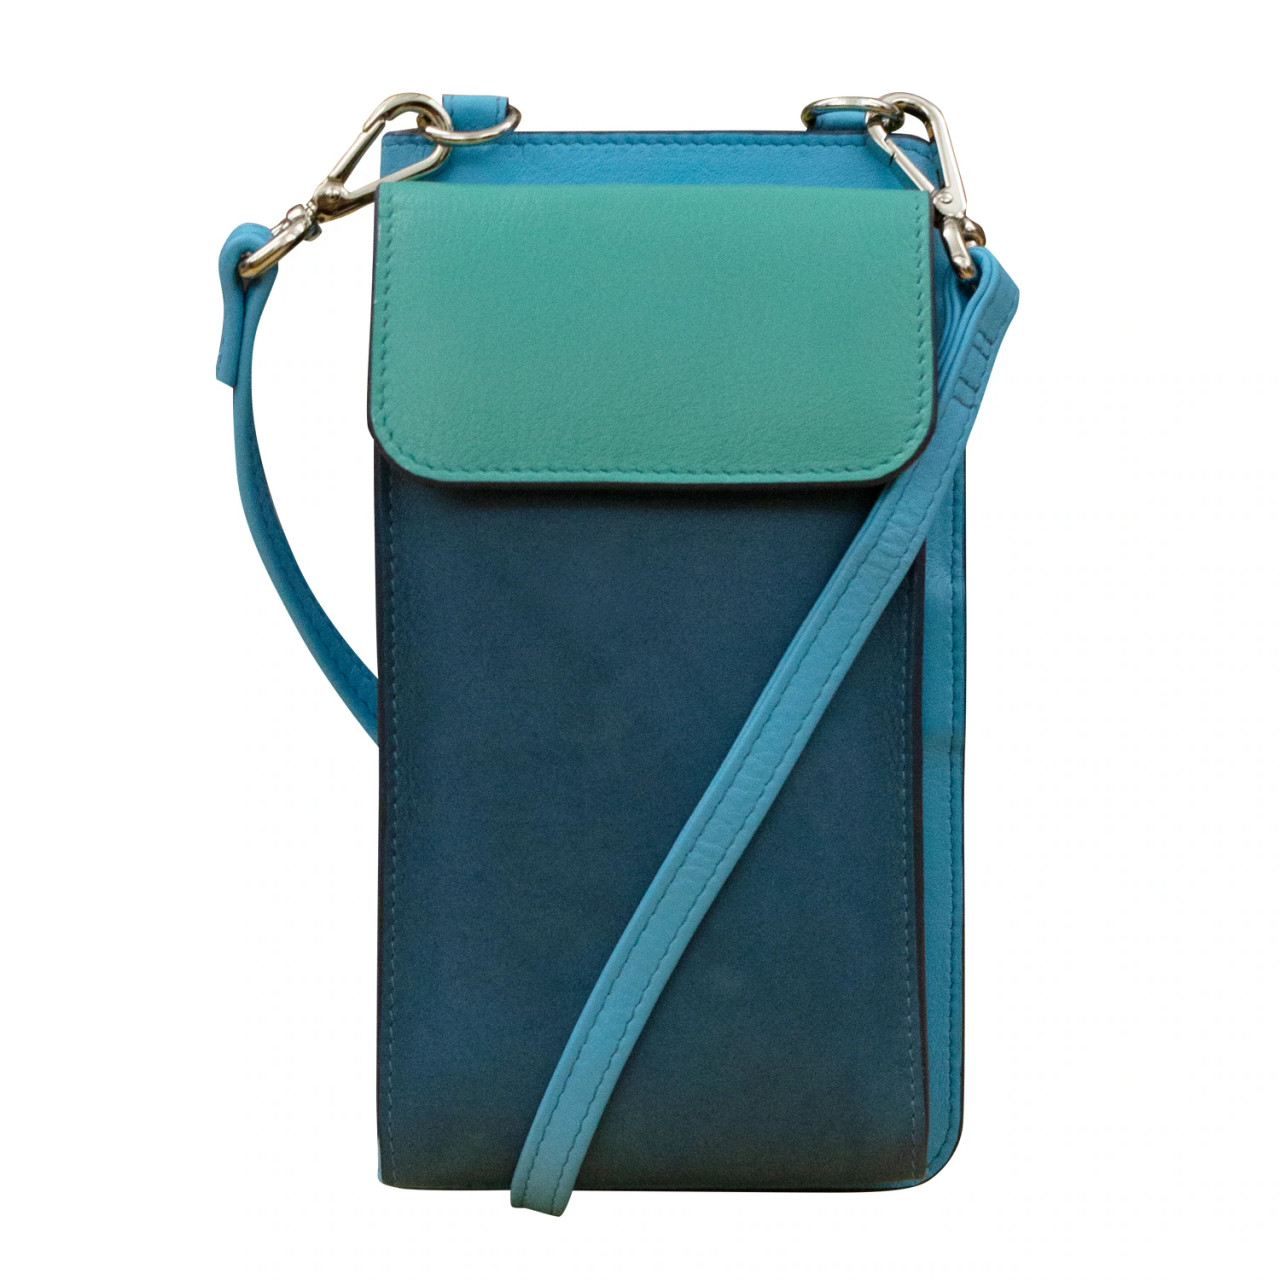 12 Crossbody Phone Bags to Shop This Season | POPSUGAR Fashion